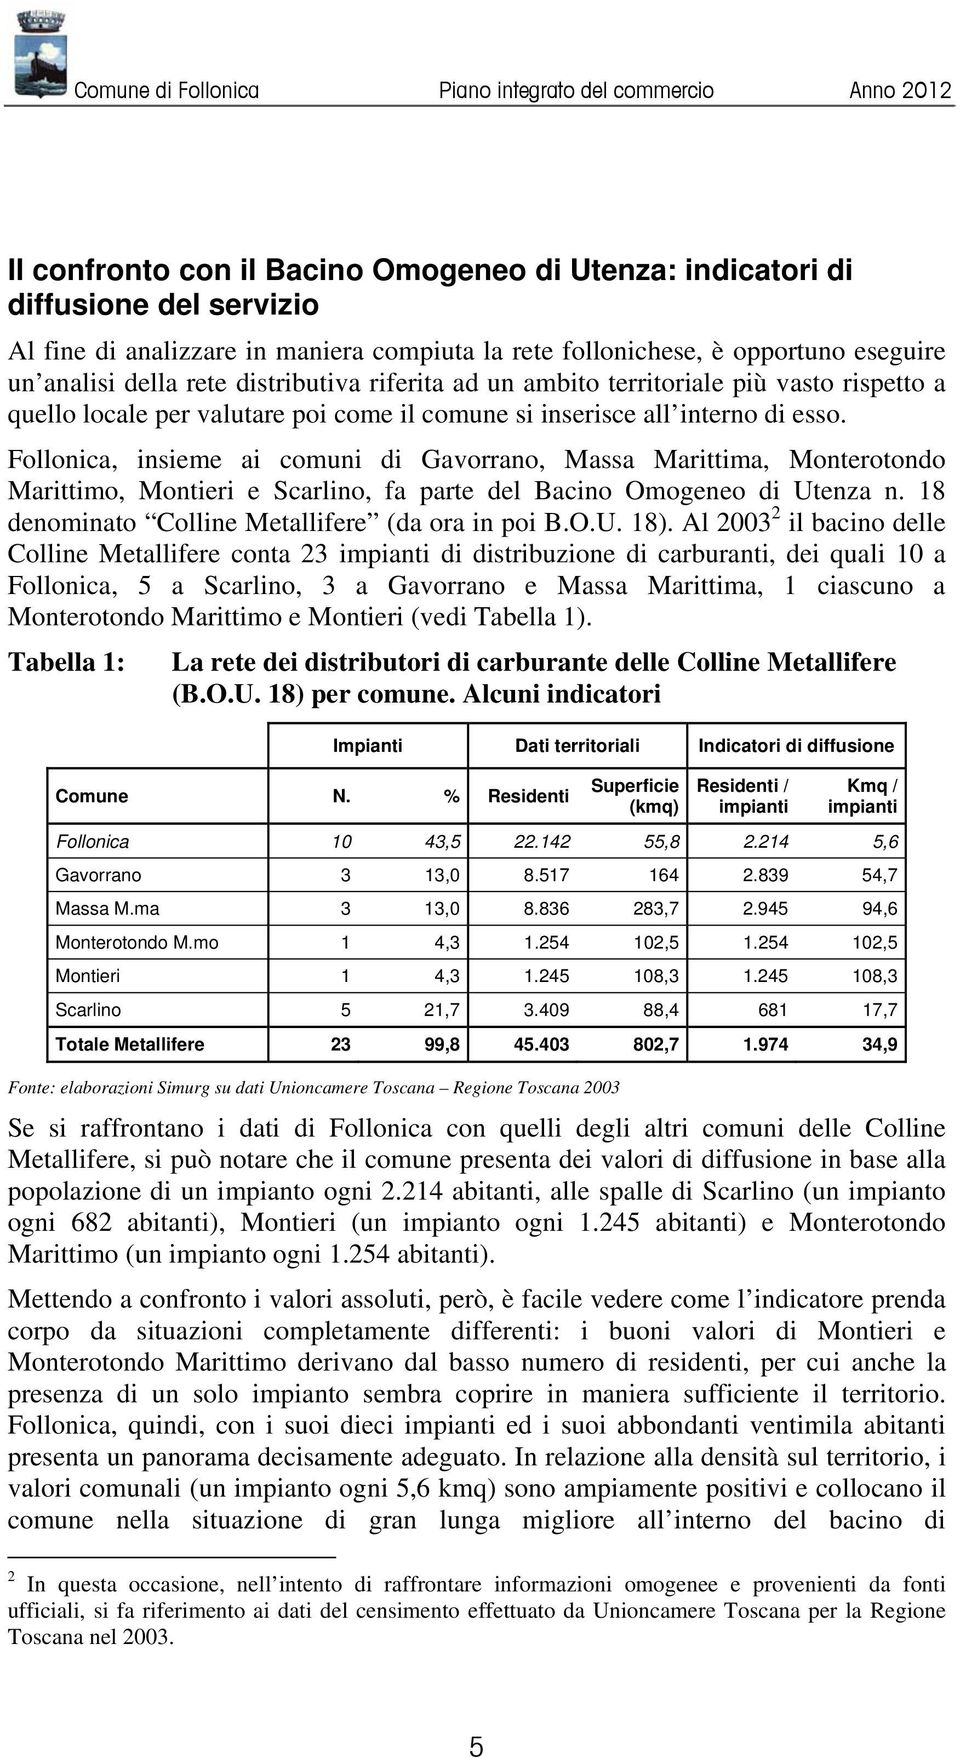 Follonica, insieme ai comuni di Gavorrano, Massa Marittima, Monterotondo Marittimo, Montieri e Scarlino, fa parte del Bacino Omogeneo di Utenza n. 18 denominato Colline Metallifere (da ora in poi B.O.U. 18).